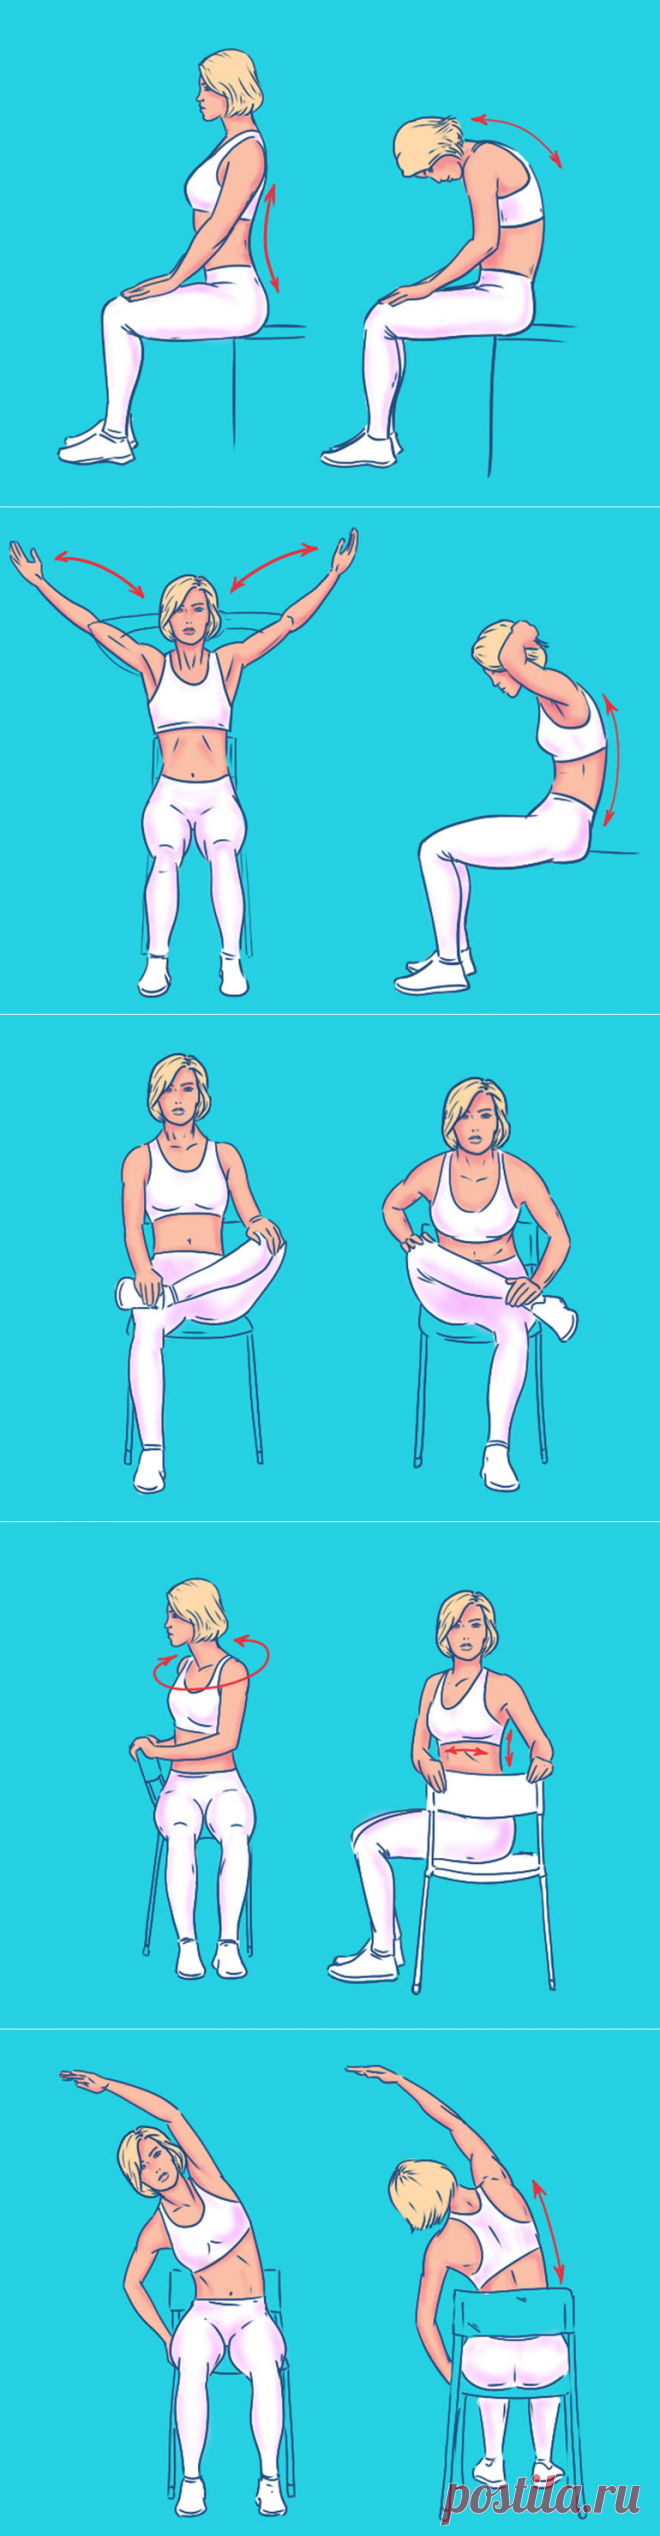 Пятерка упражнений для спины с эффектом массажа: как будто только что помял массажист